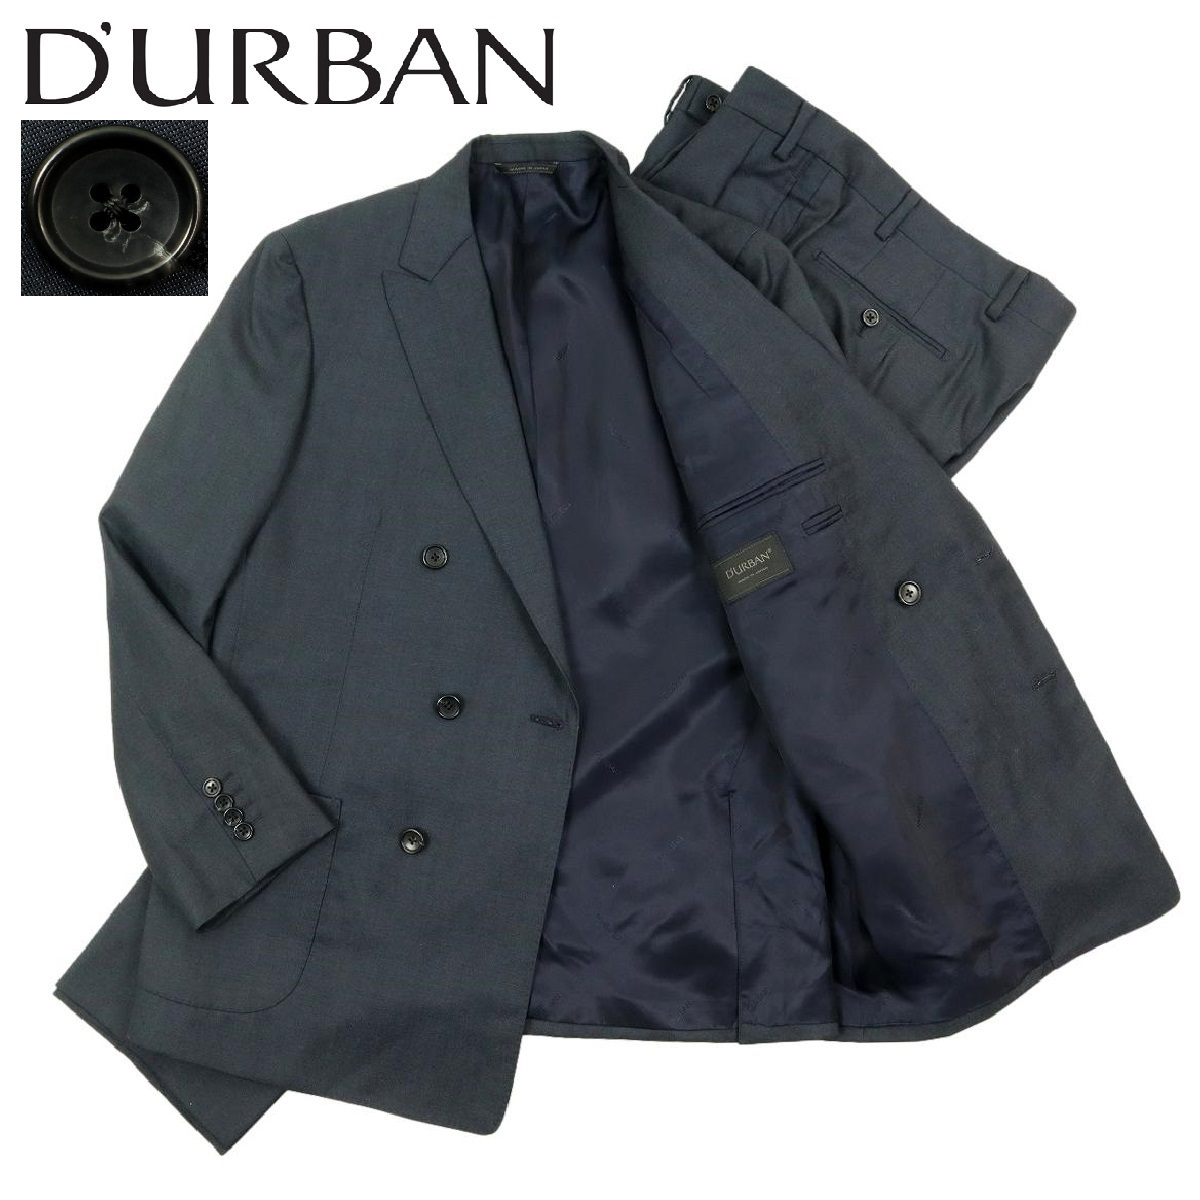 【B2485】【新品同様】D'URBAN ダーバン スーツ セットアップ ダブルテーラードジャケット ウールジャケット パンツ ボトム サイズBB4